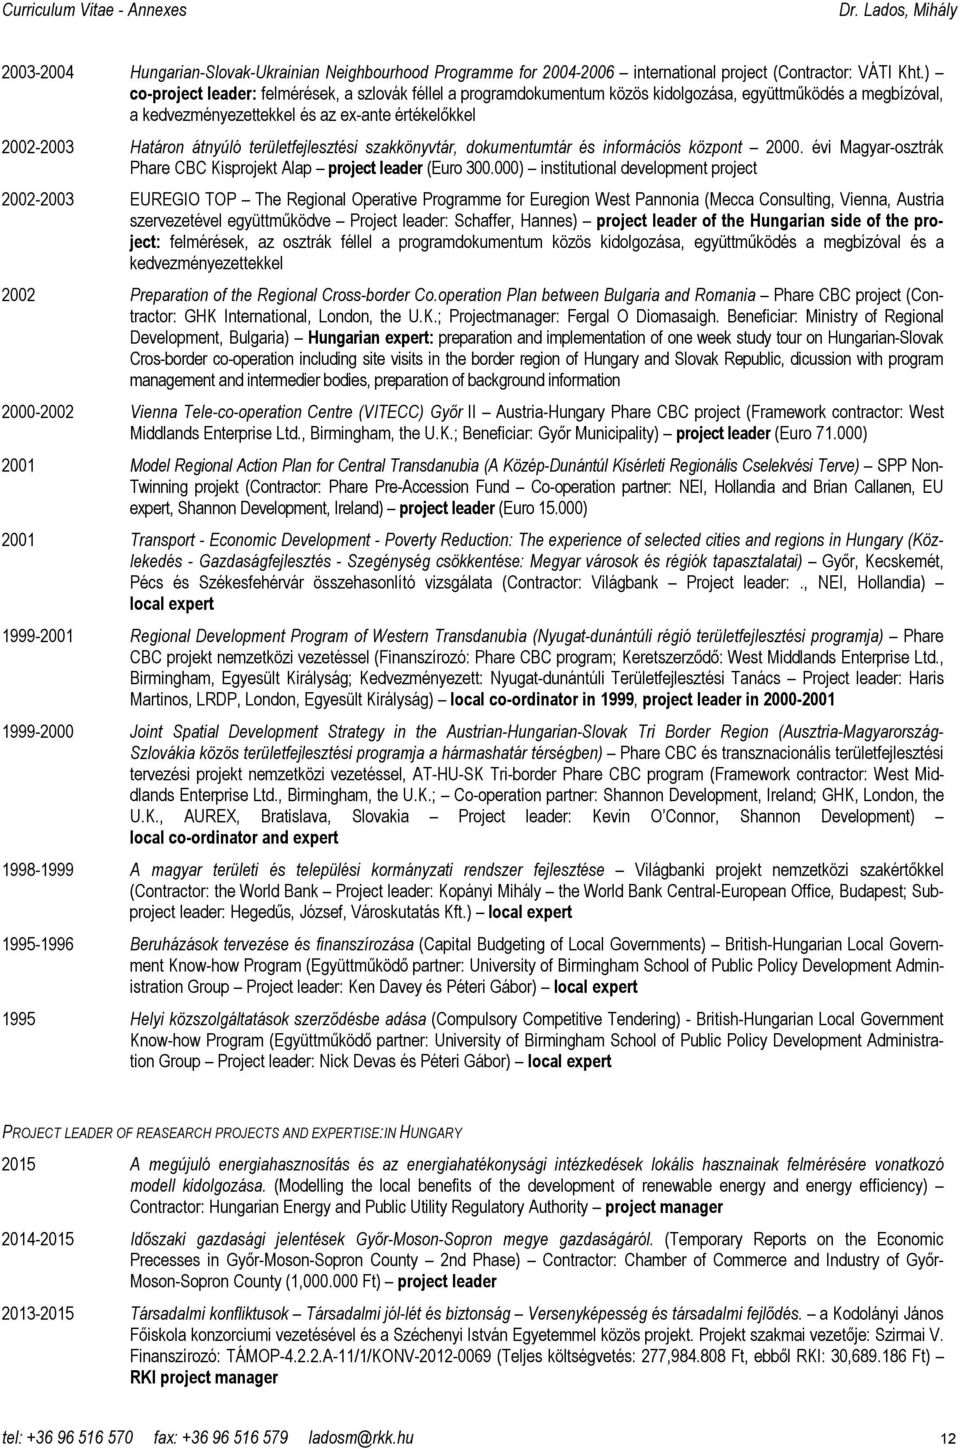 területfejlesztési szakkönyvtár, dokumentumtár és információs központ 2000. évi Magyar-osztrák Phare CBC Kisprojekt Alap project leader (Euro 300.